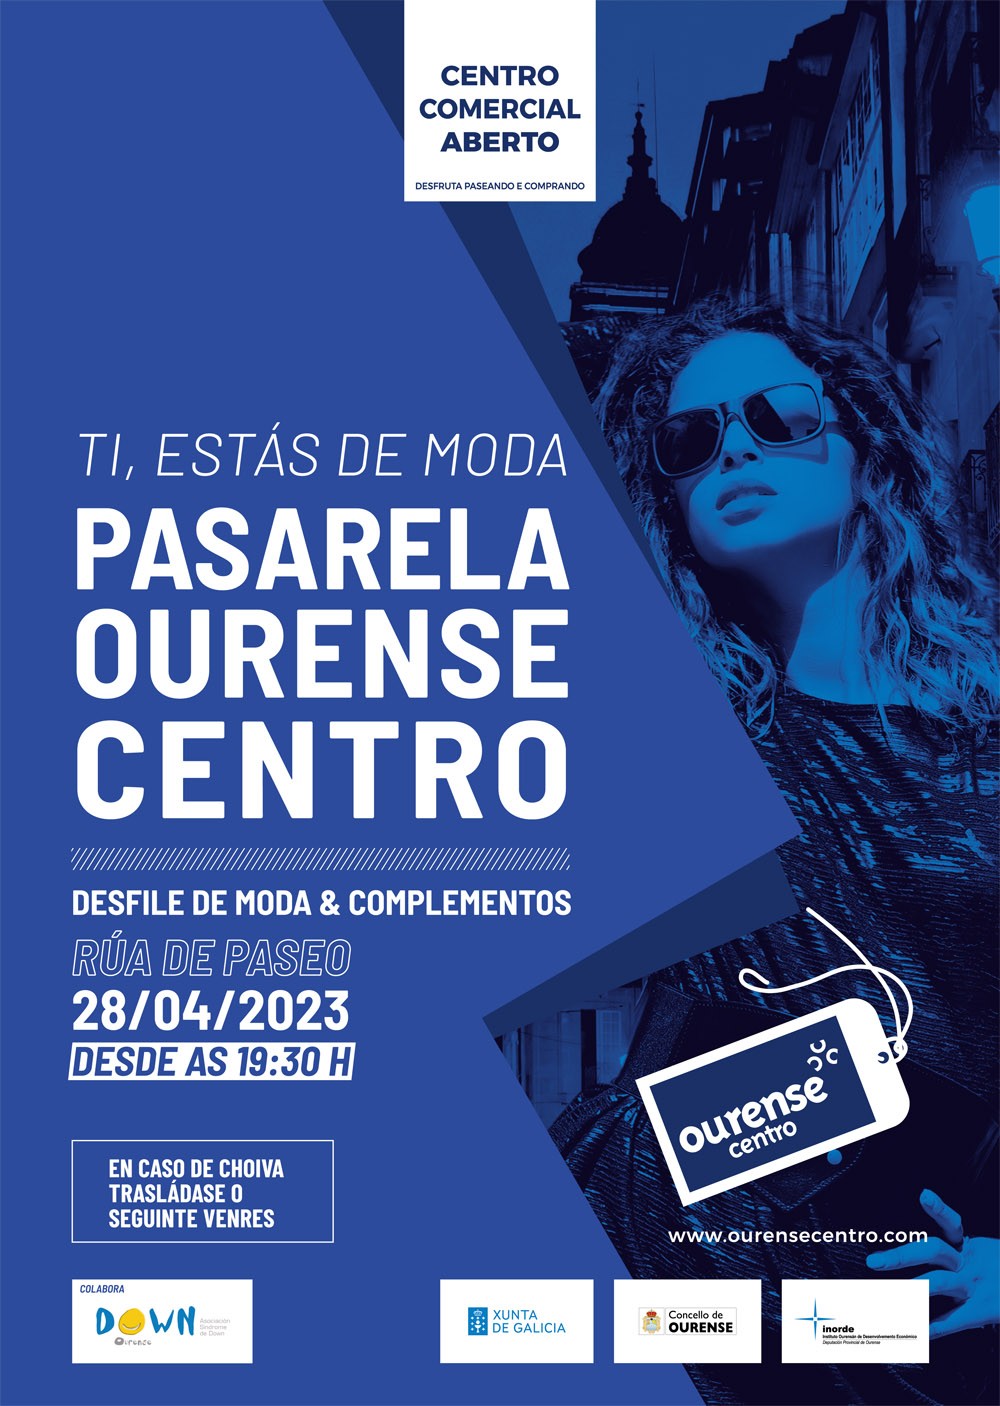 Pasarela Ourense Centro